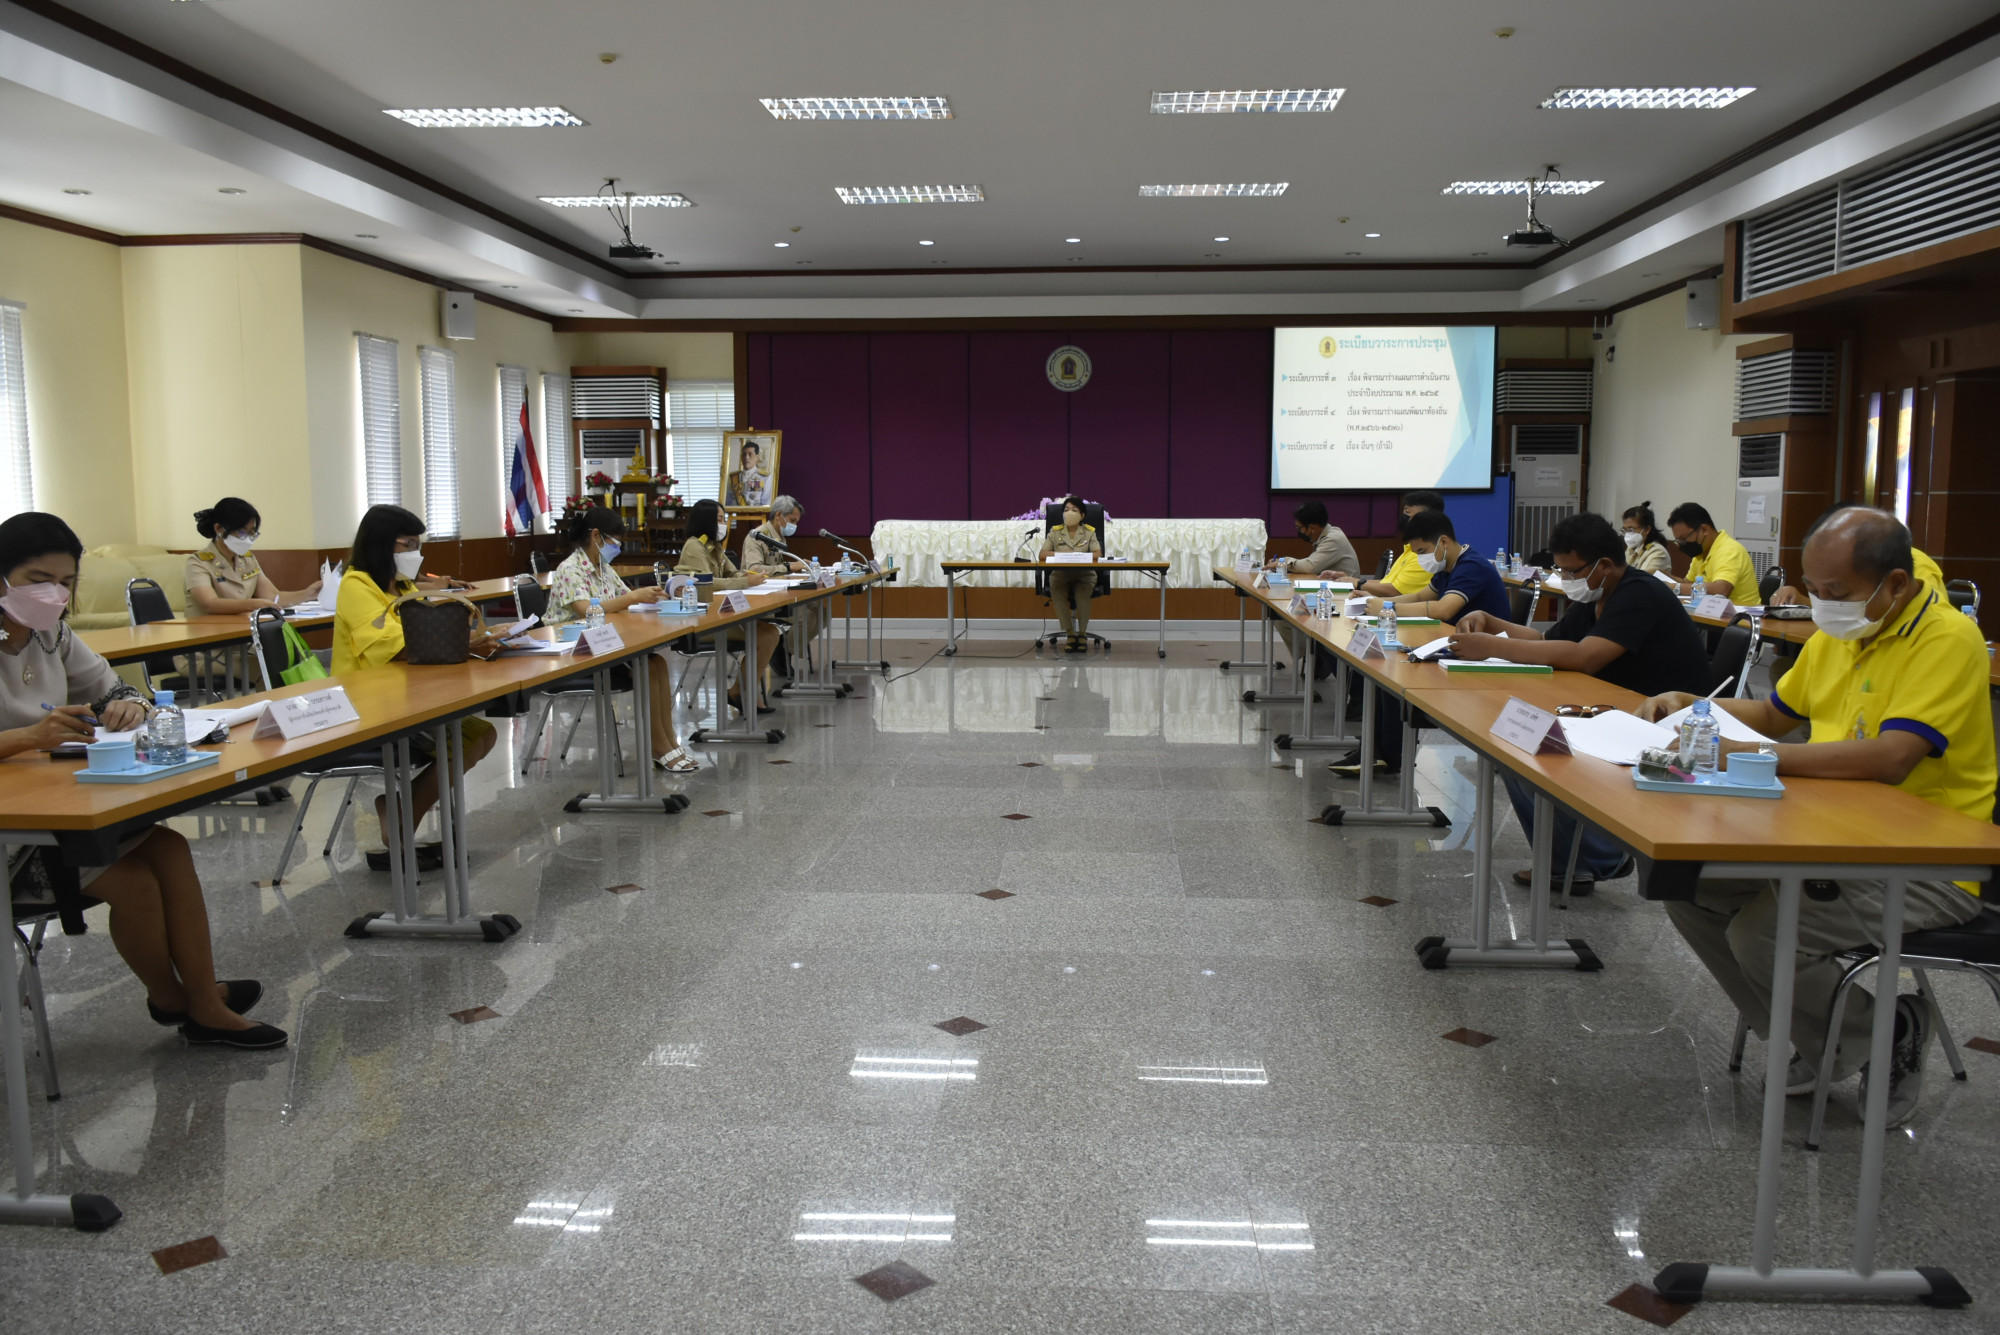 ประชุมคณะกรรมการพัฒนาเทศบาลตำบลพลับพลานารายณ์ ครั้งที่ 4/2564